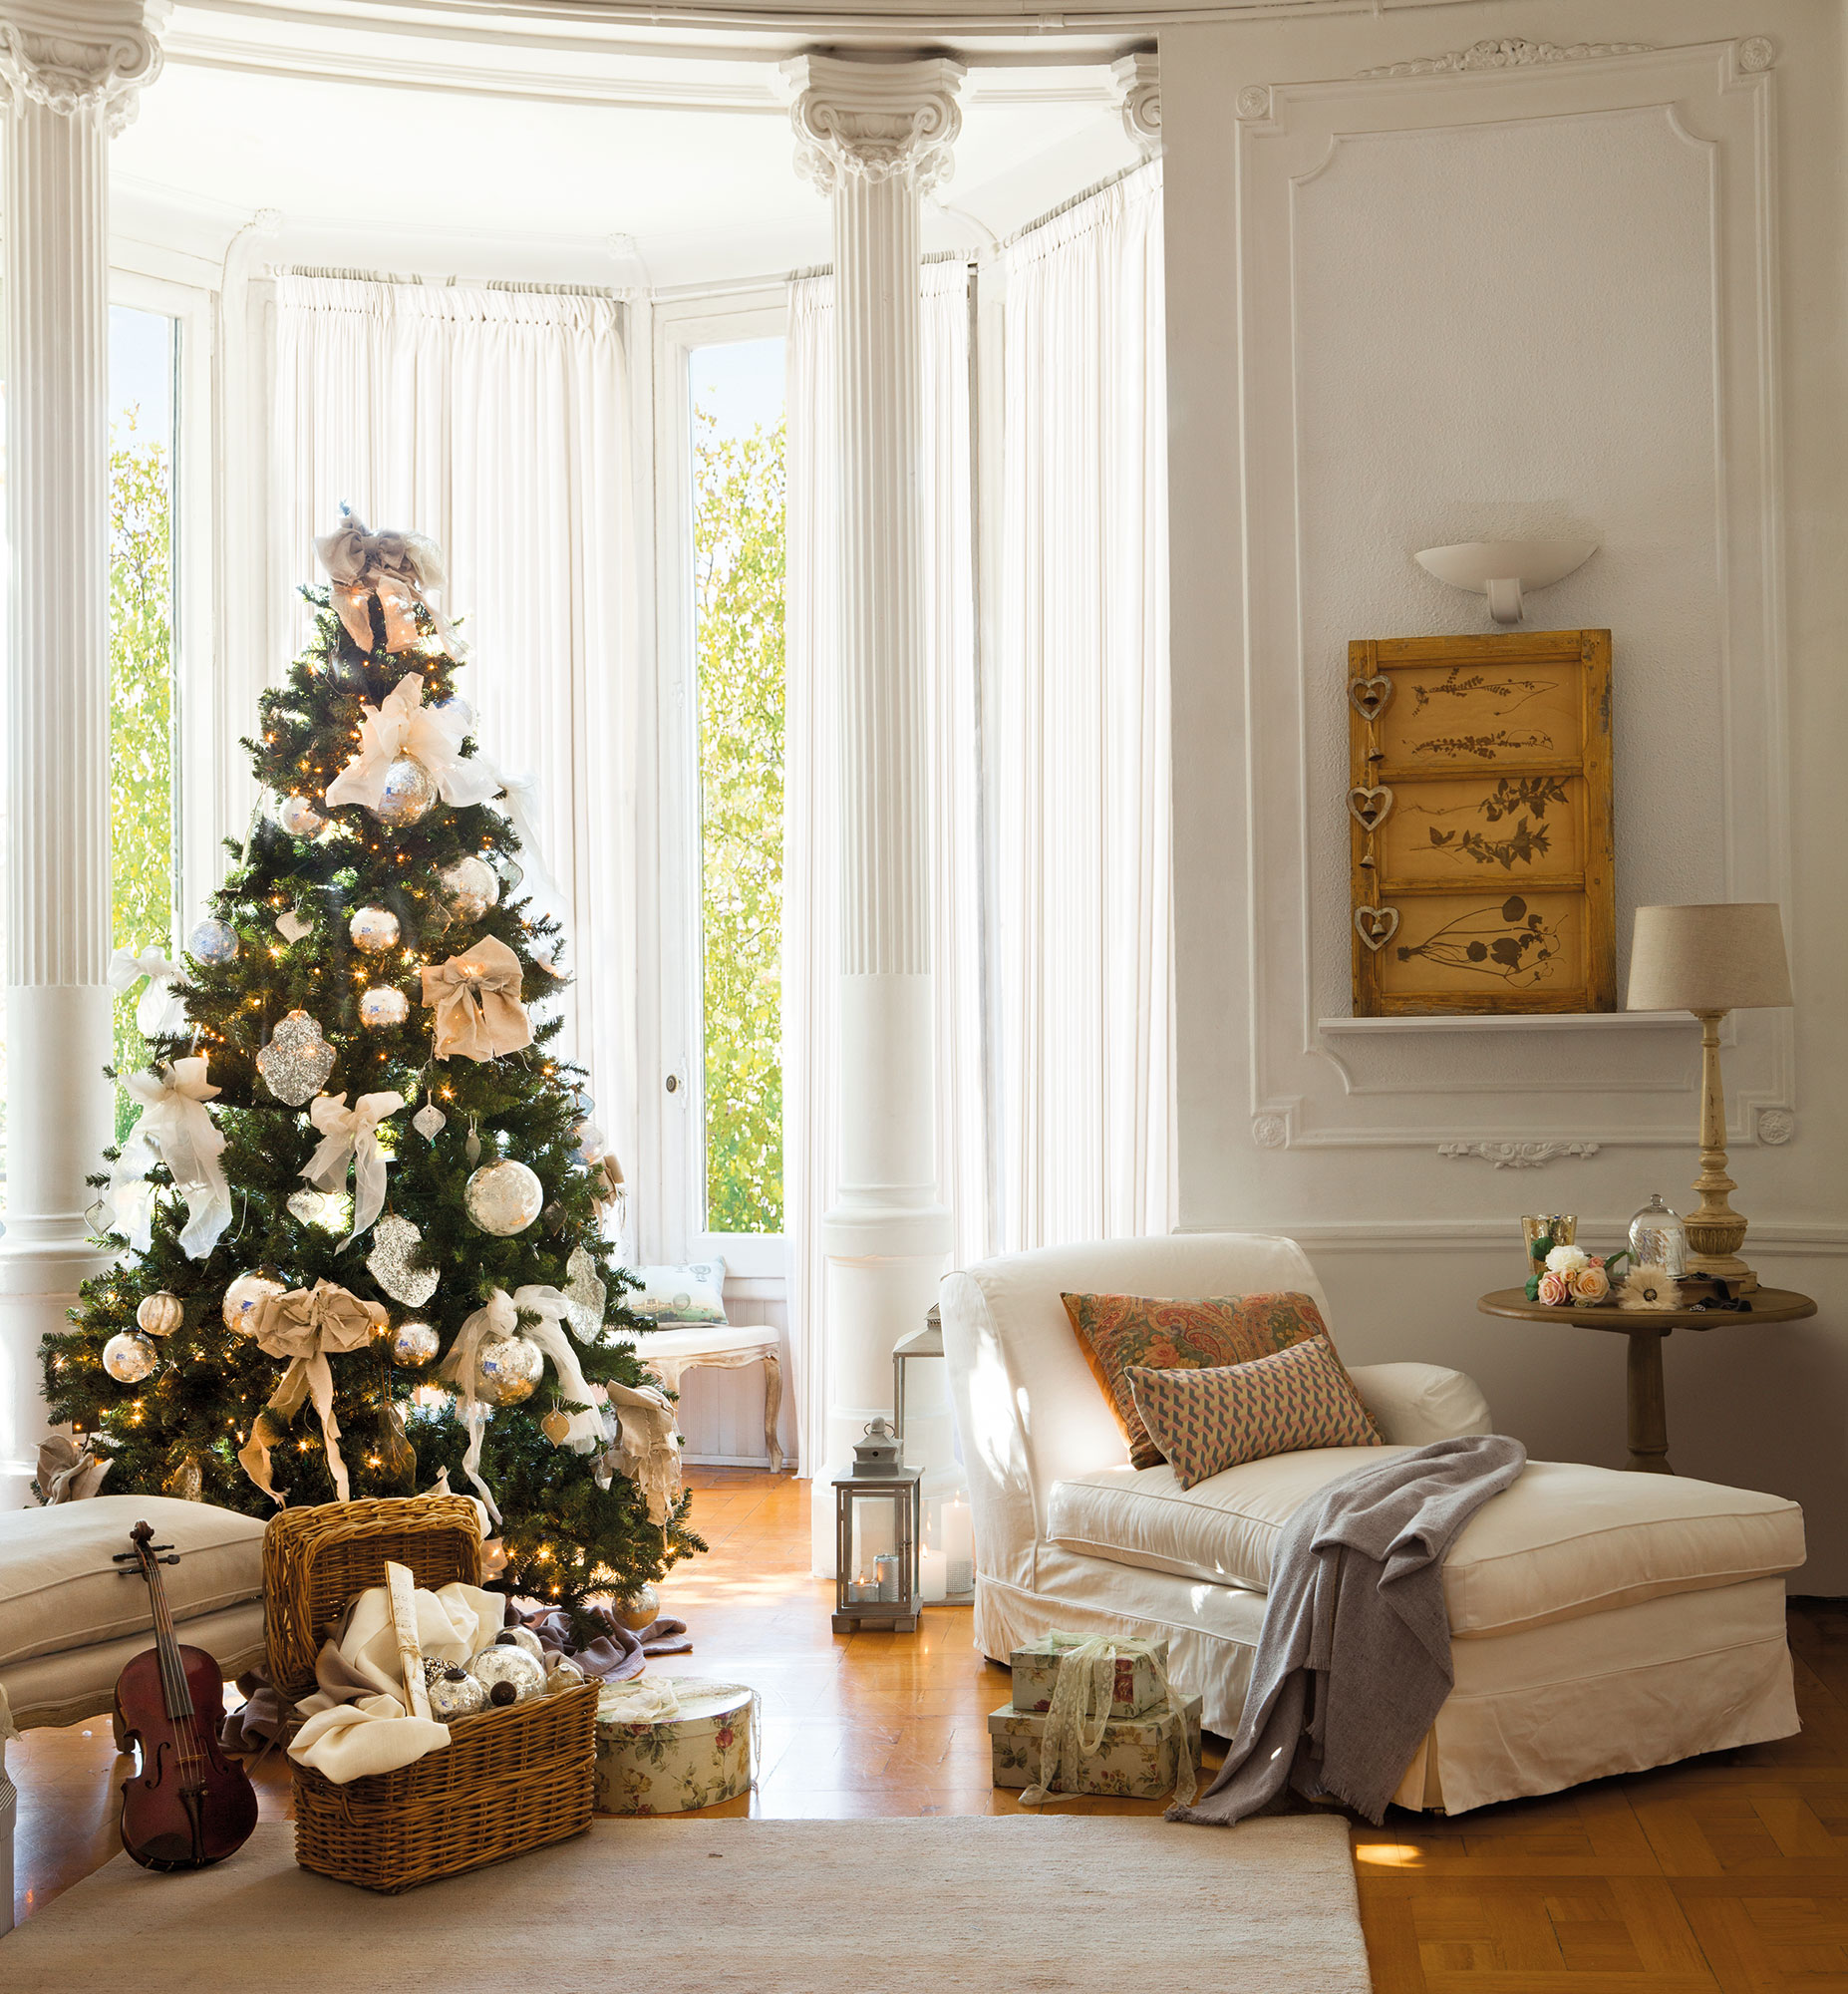 Rincón del árbol de Navidad en salón clásico decorado en blanco y dorado